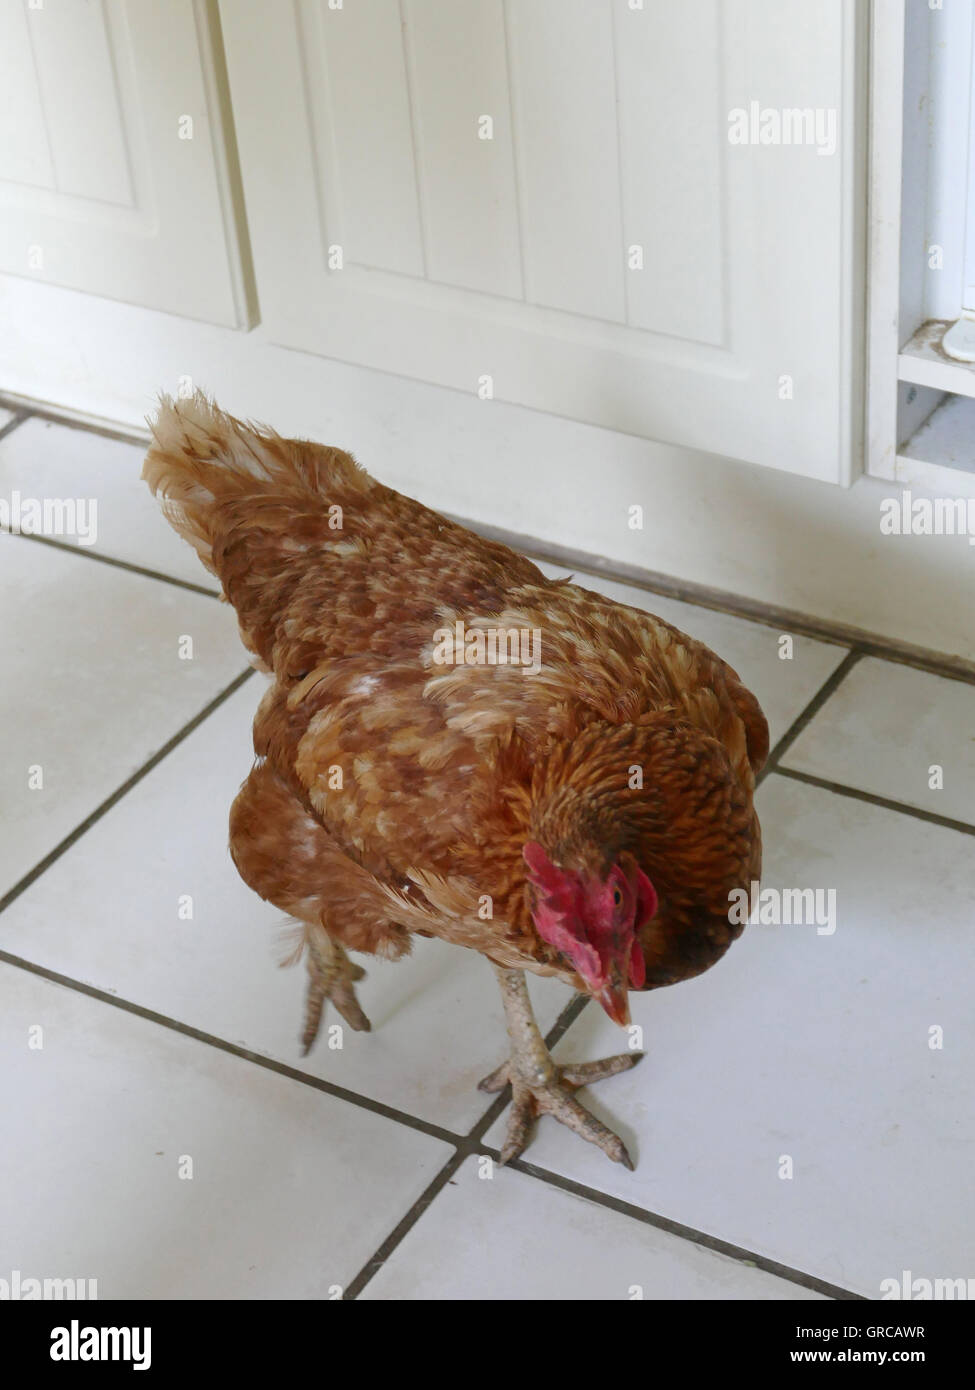 Brown Hen Berta passeggiate curiosamente intorno in cucina Foto Stock